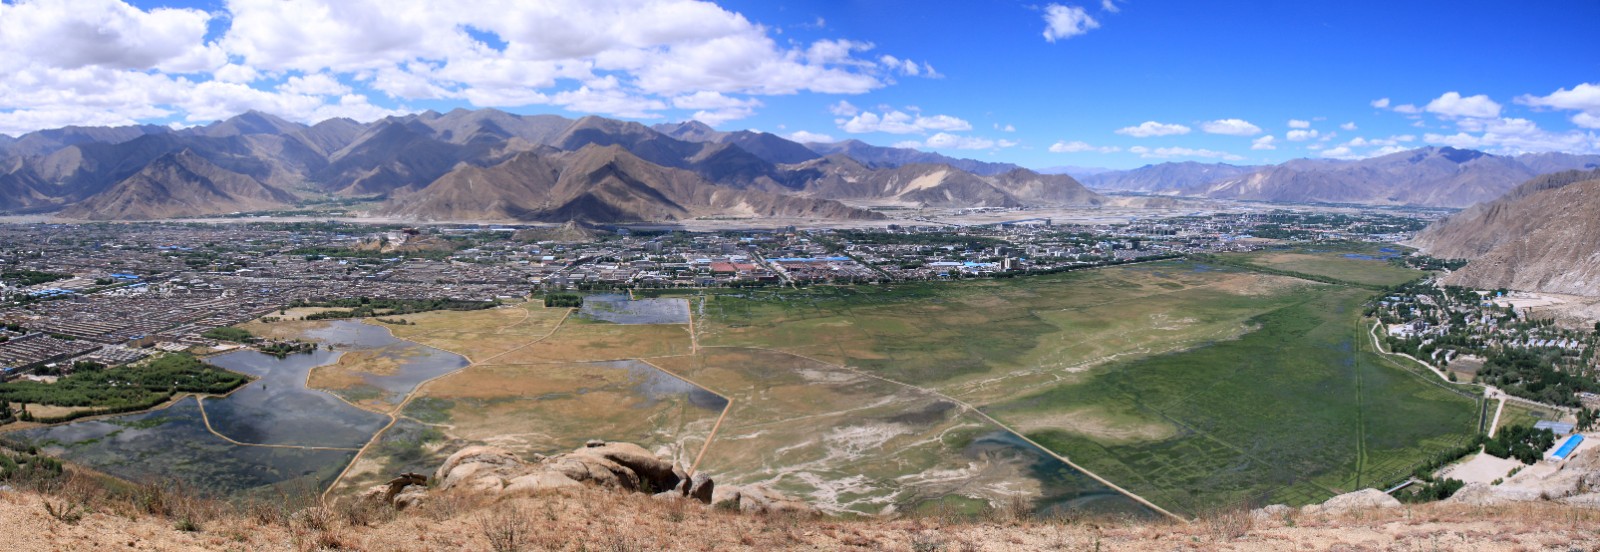 西藏大力推进湿地保护工作  4处湿地被列(602077)-20210603084218.jpg